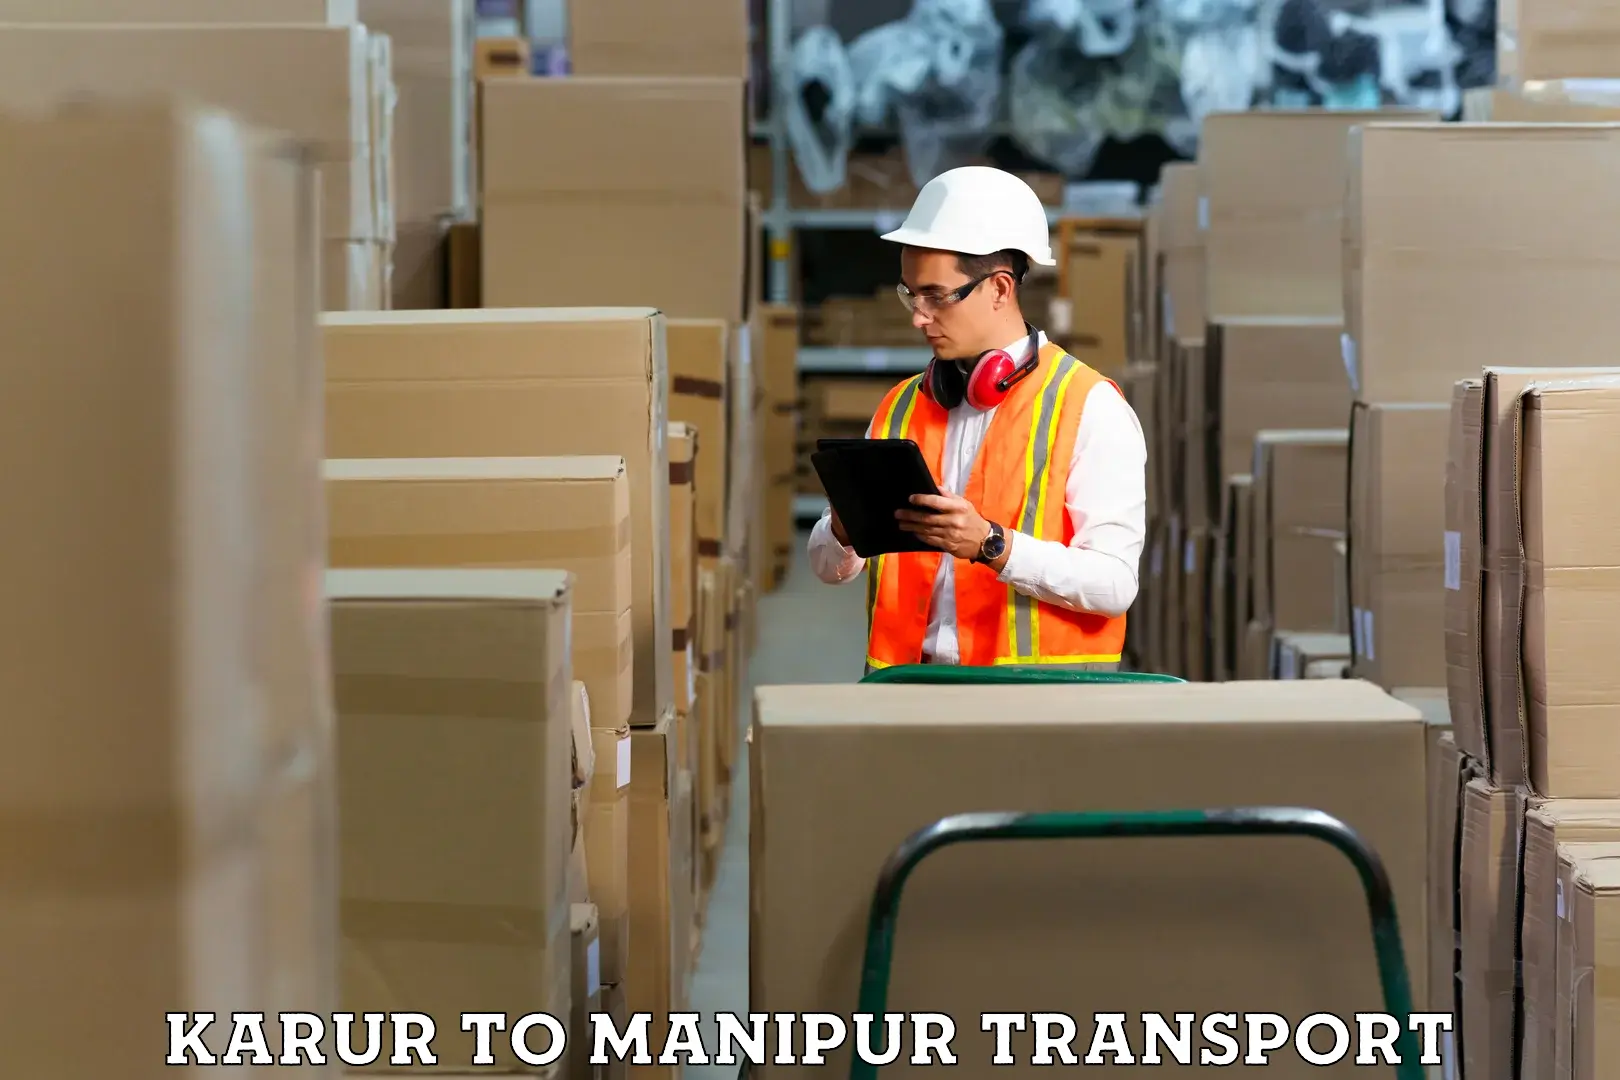 Furniture transport service Karur to NIT Manipur